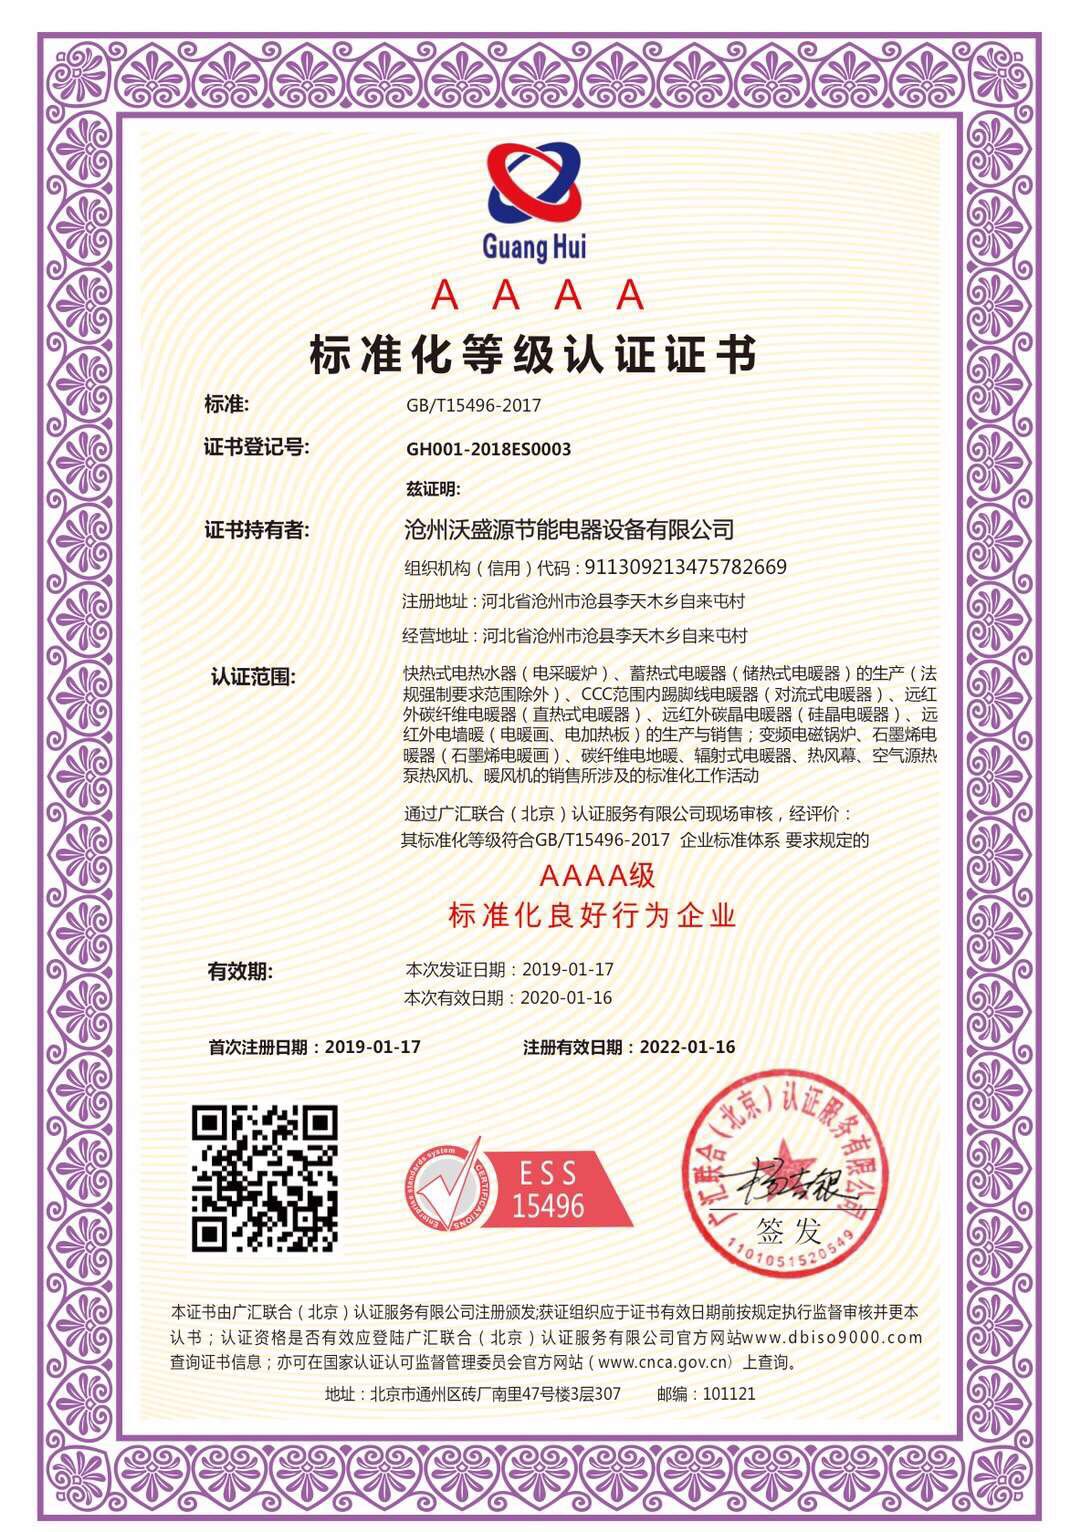 祝贺河北沧州企业通过标准化良好行为企业认证